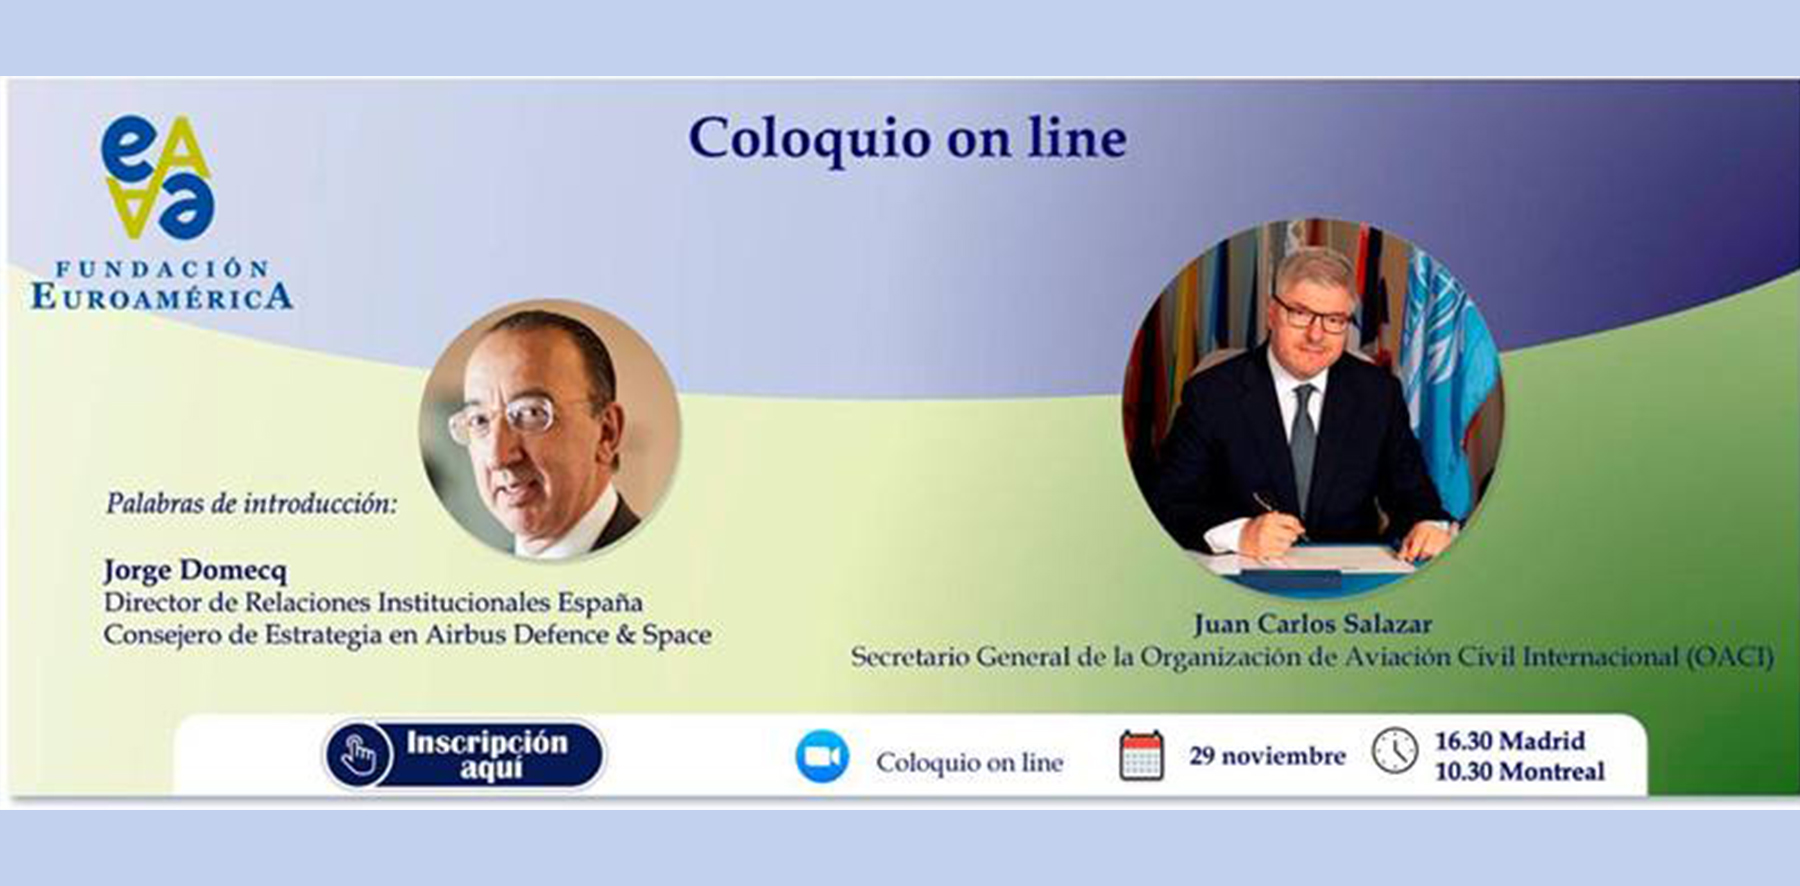 Coloquio online con Juan Carlos Salazar, Secretario General de la OACI